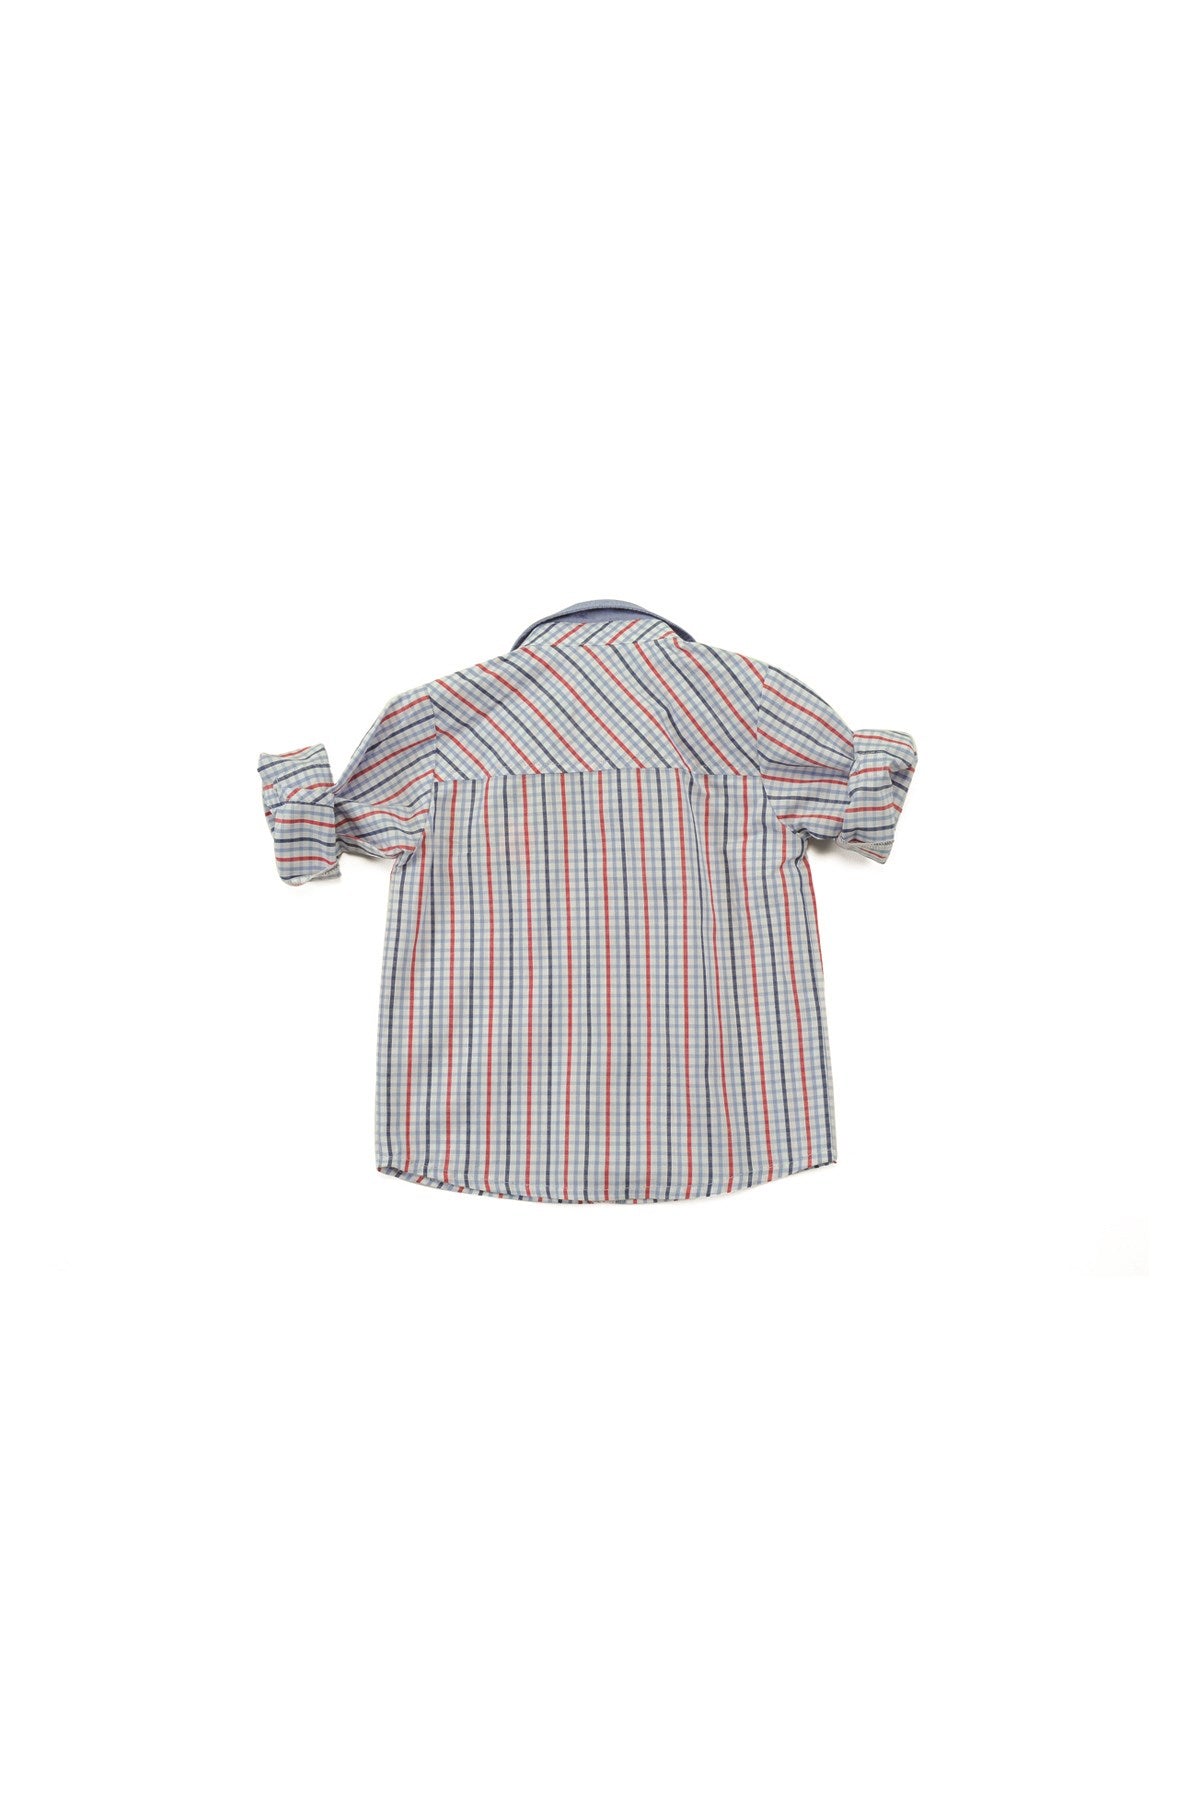 Erkek Bebek Kareli Uzun Kollu Gömlek  (6ay-4yaş)-1